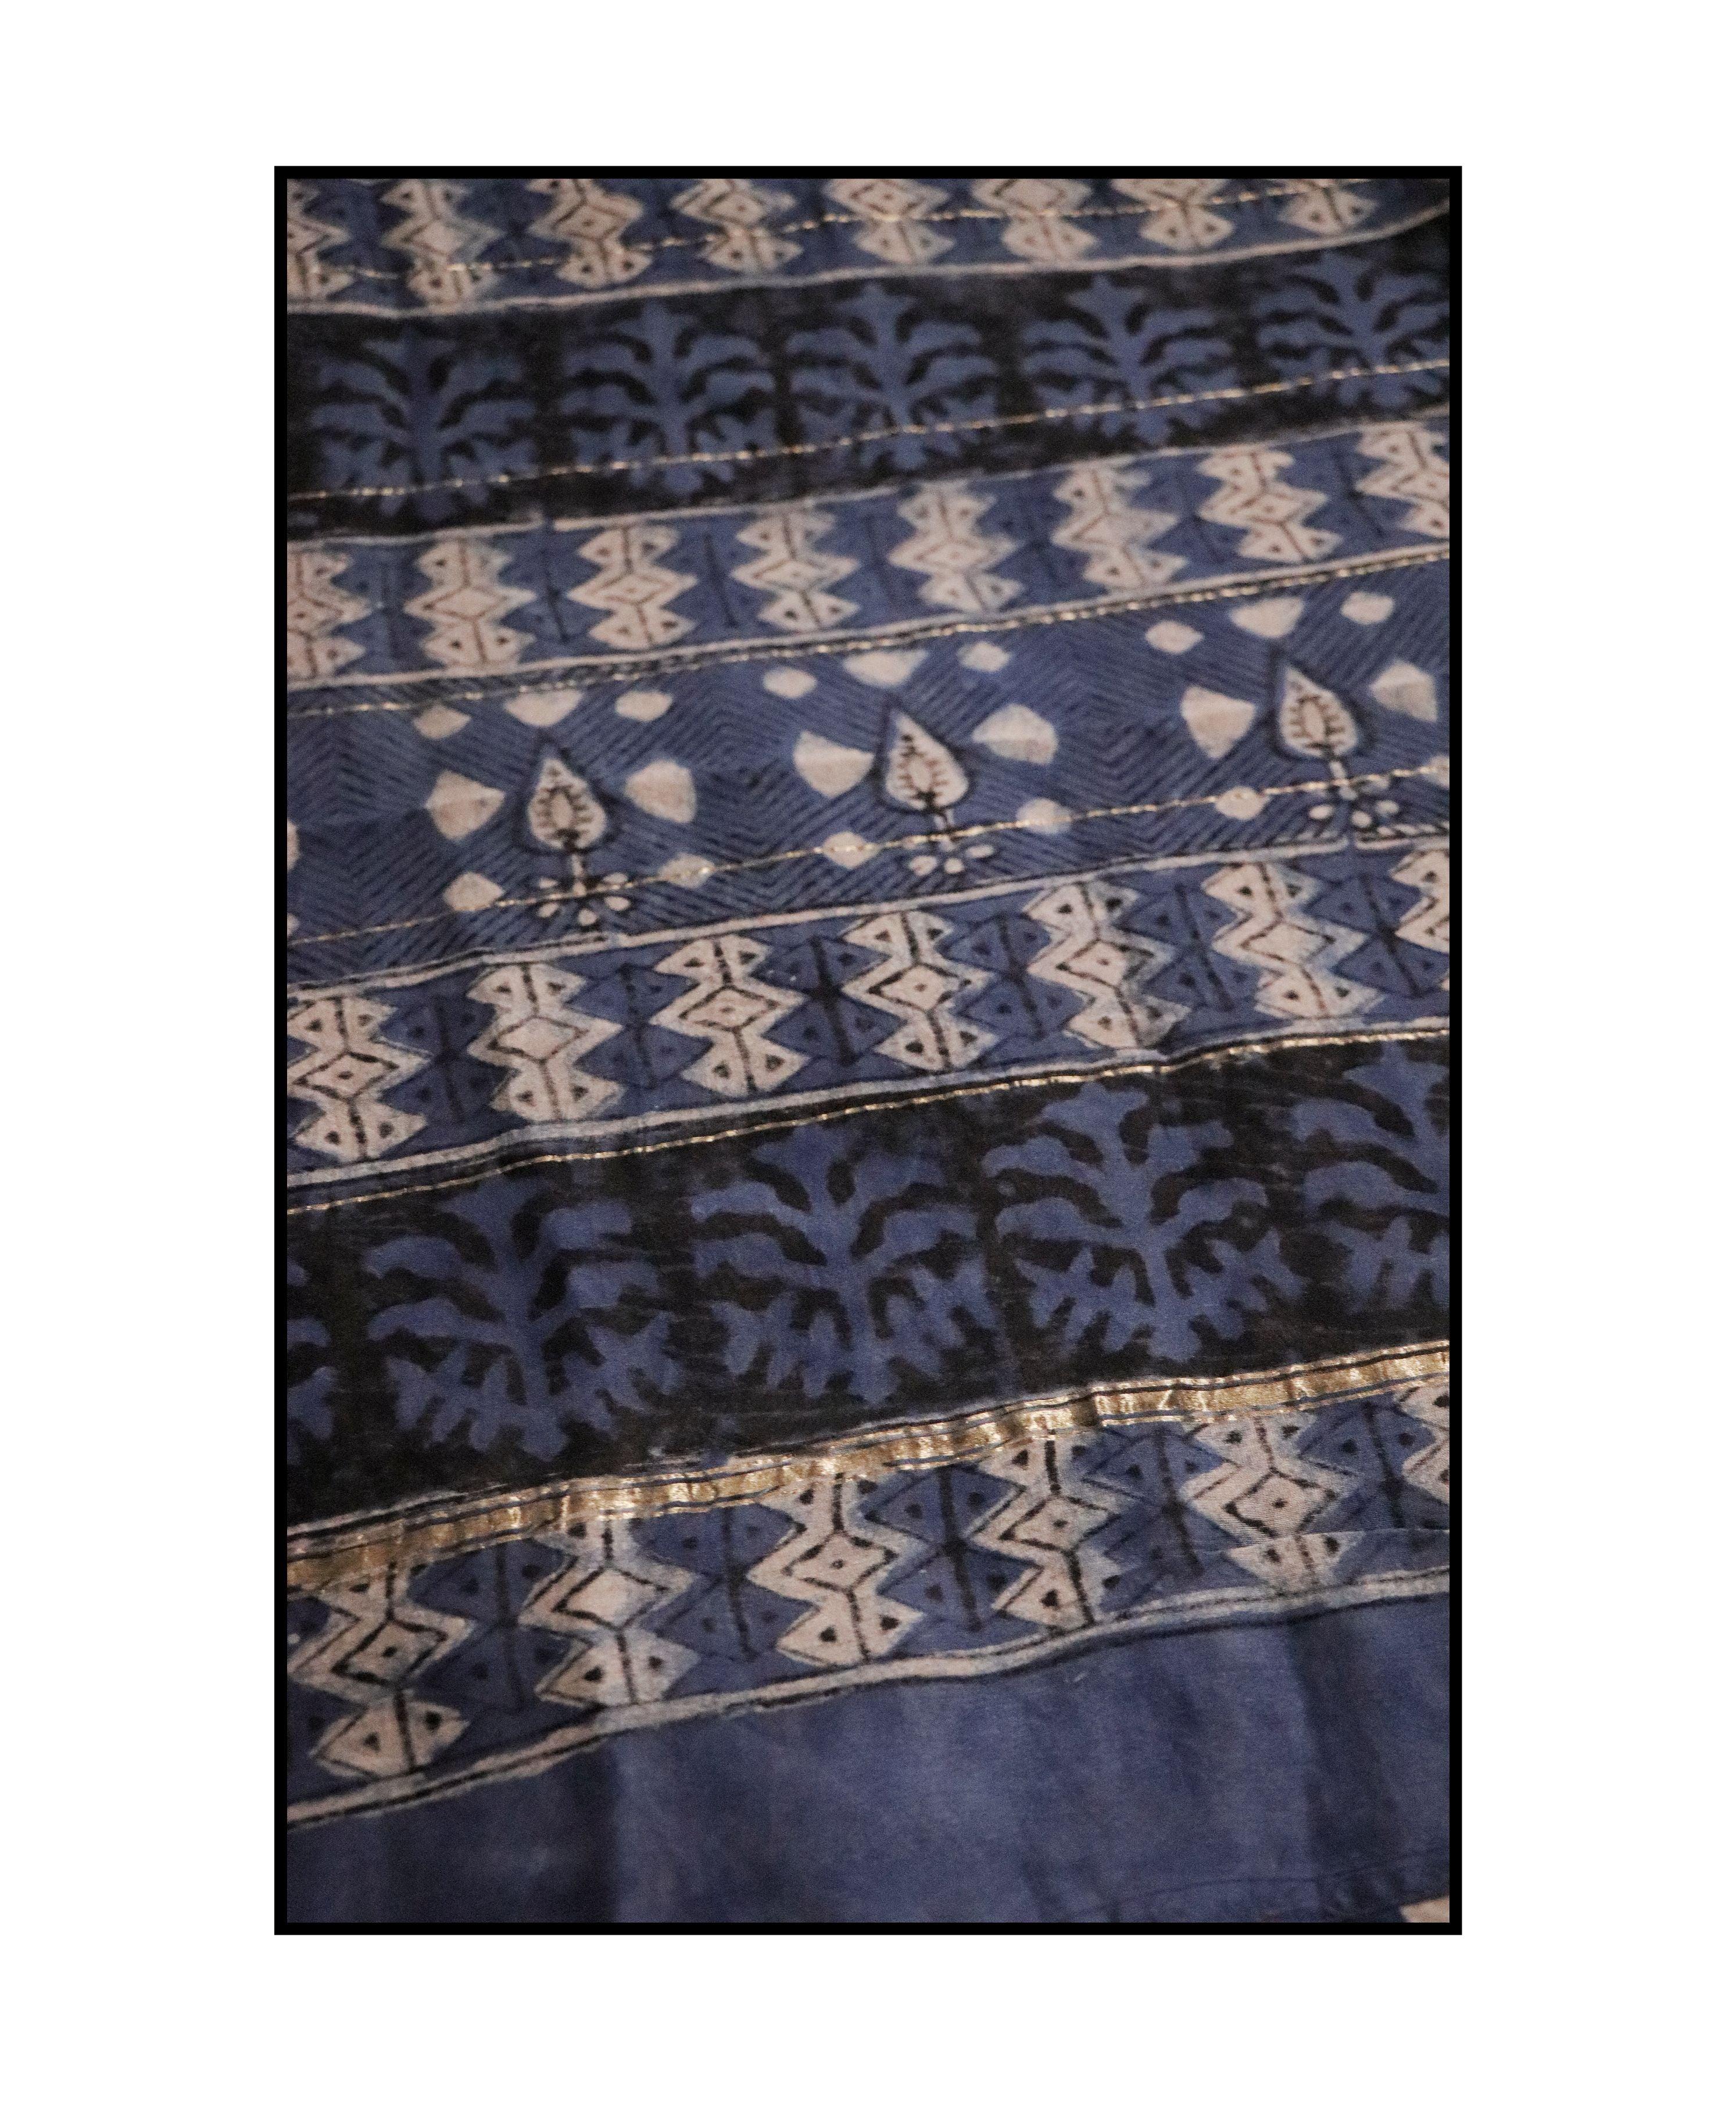 Kaisori Malhar - Dabu Light Indigo twig handblockprinted Silk Cotton saree Kaisori